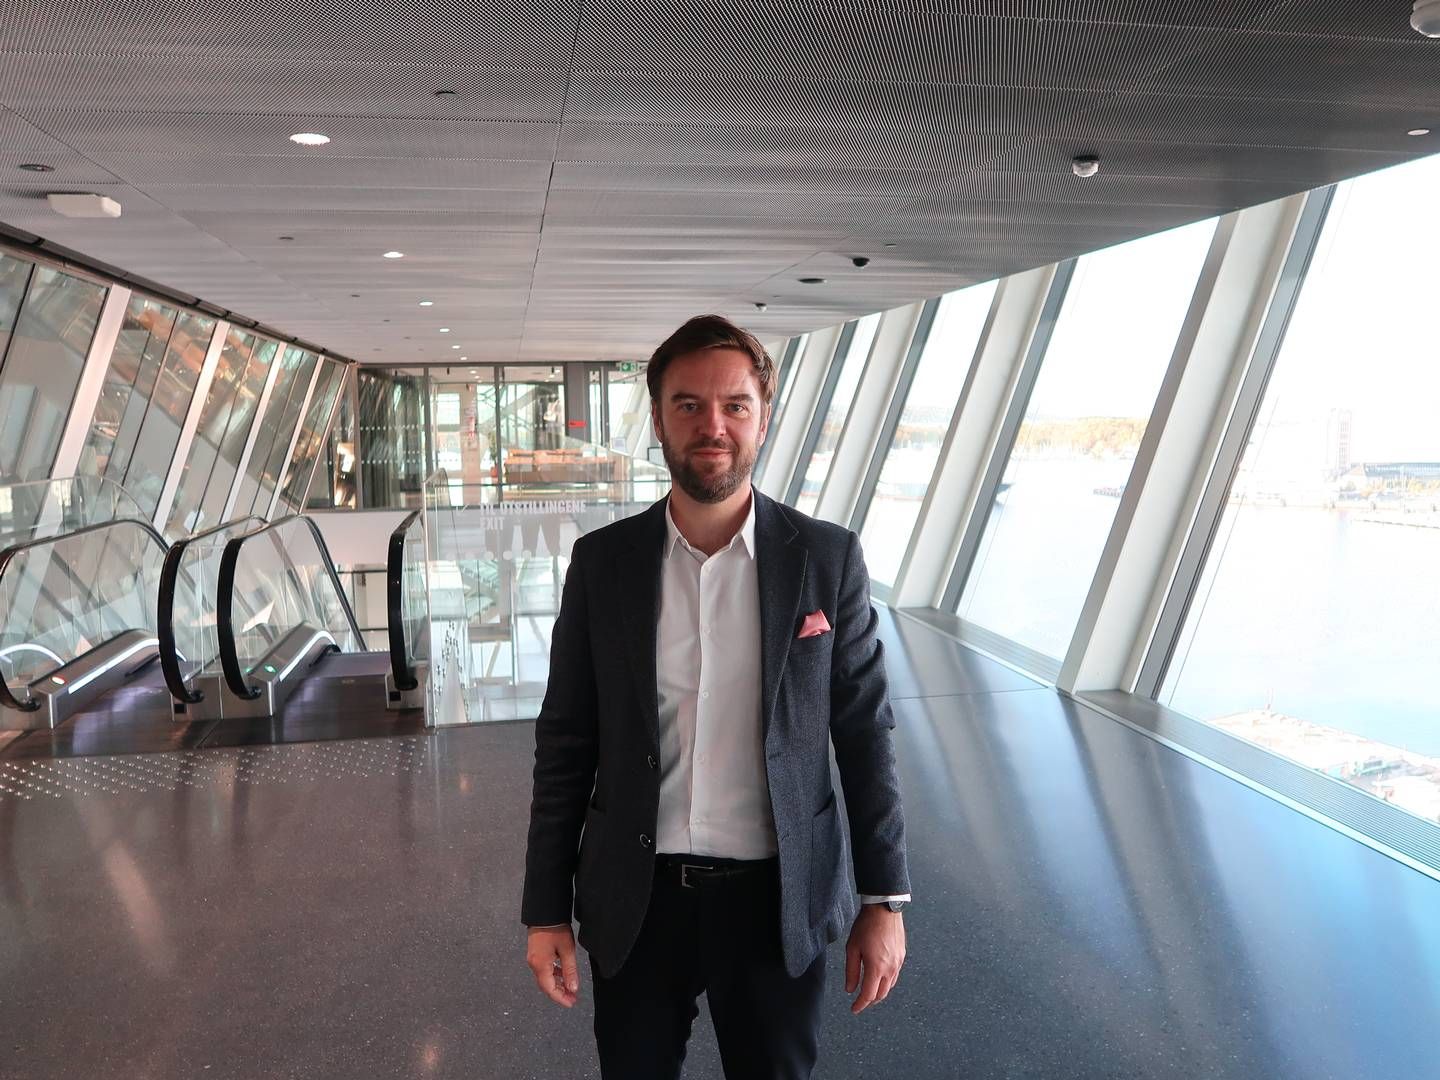 Nicolas Kozubek står for andet år i spidsen for ejendomsmessen Mipim i franske Cannes. Han fortæller, at bæredygtighed i år topper messens prioriteringsliste. | Foto: Jørgen Fjellheim / EiendomsWatch